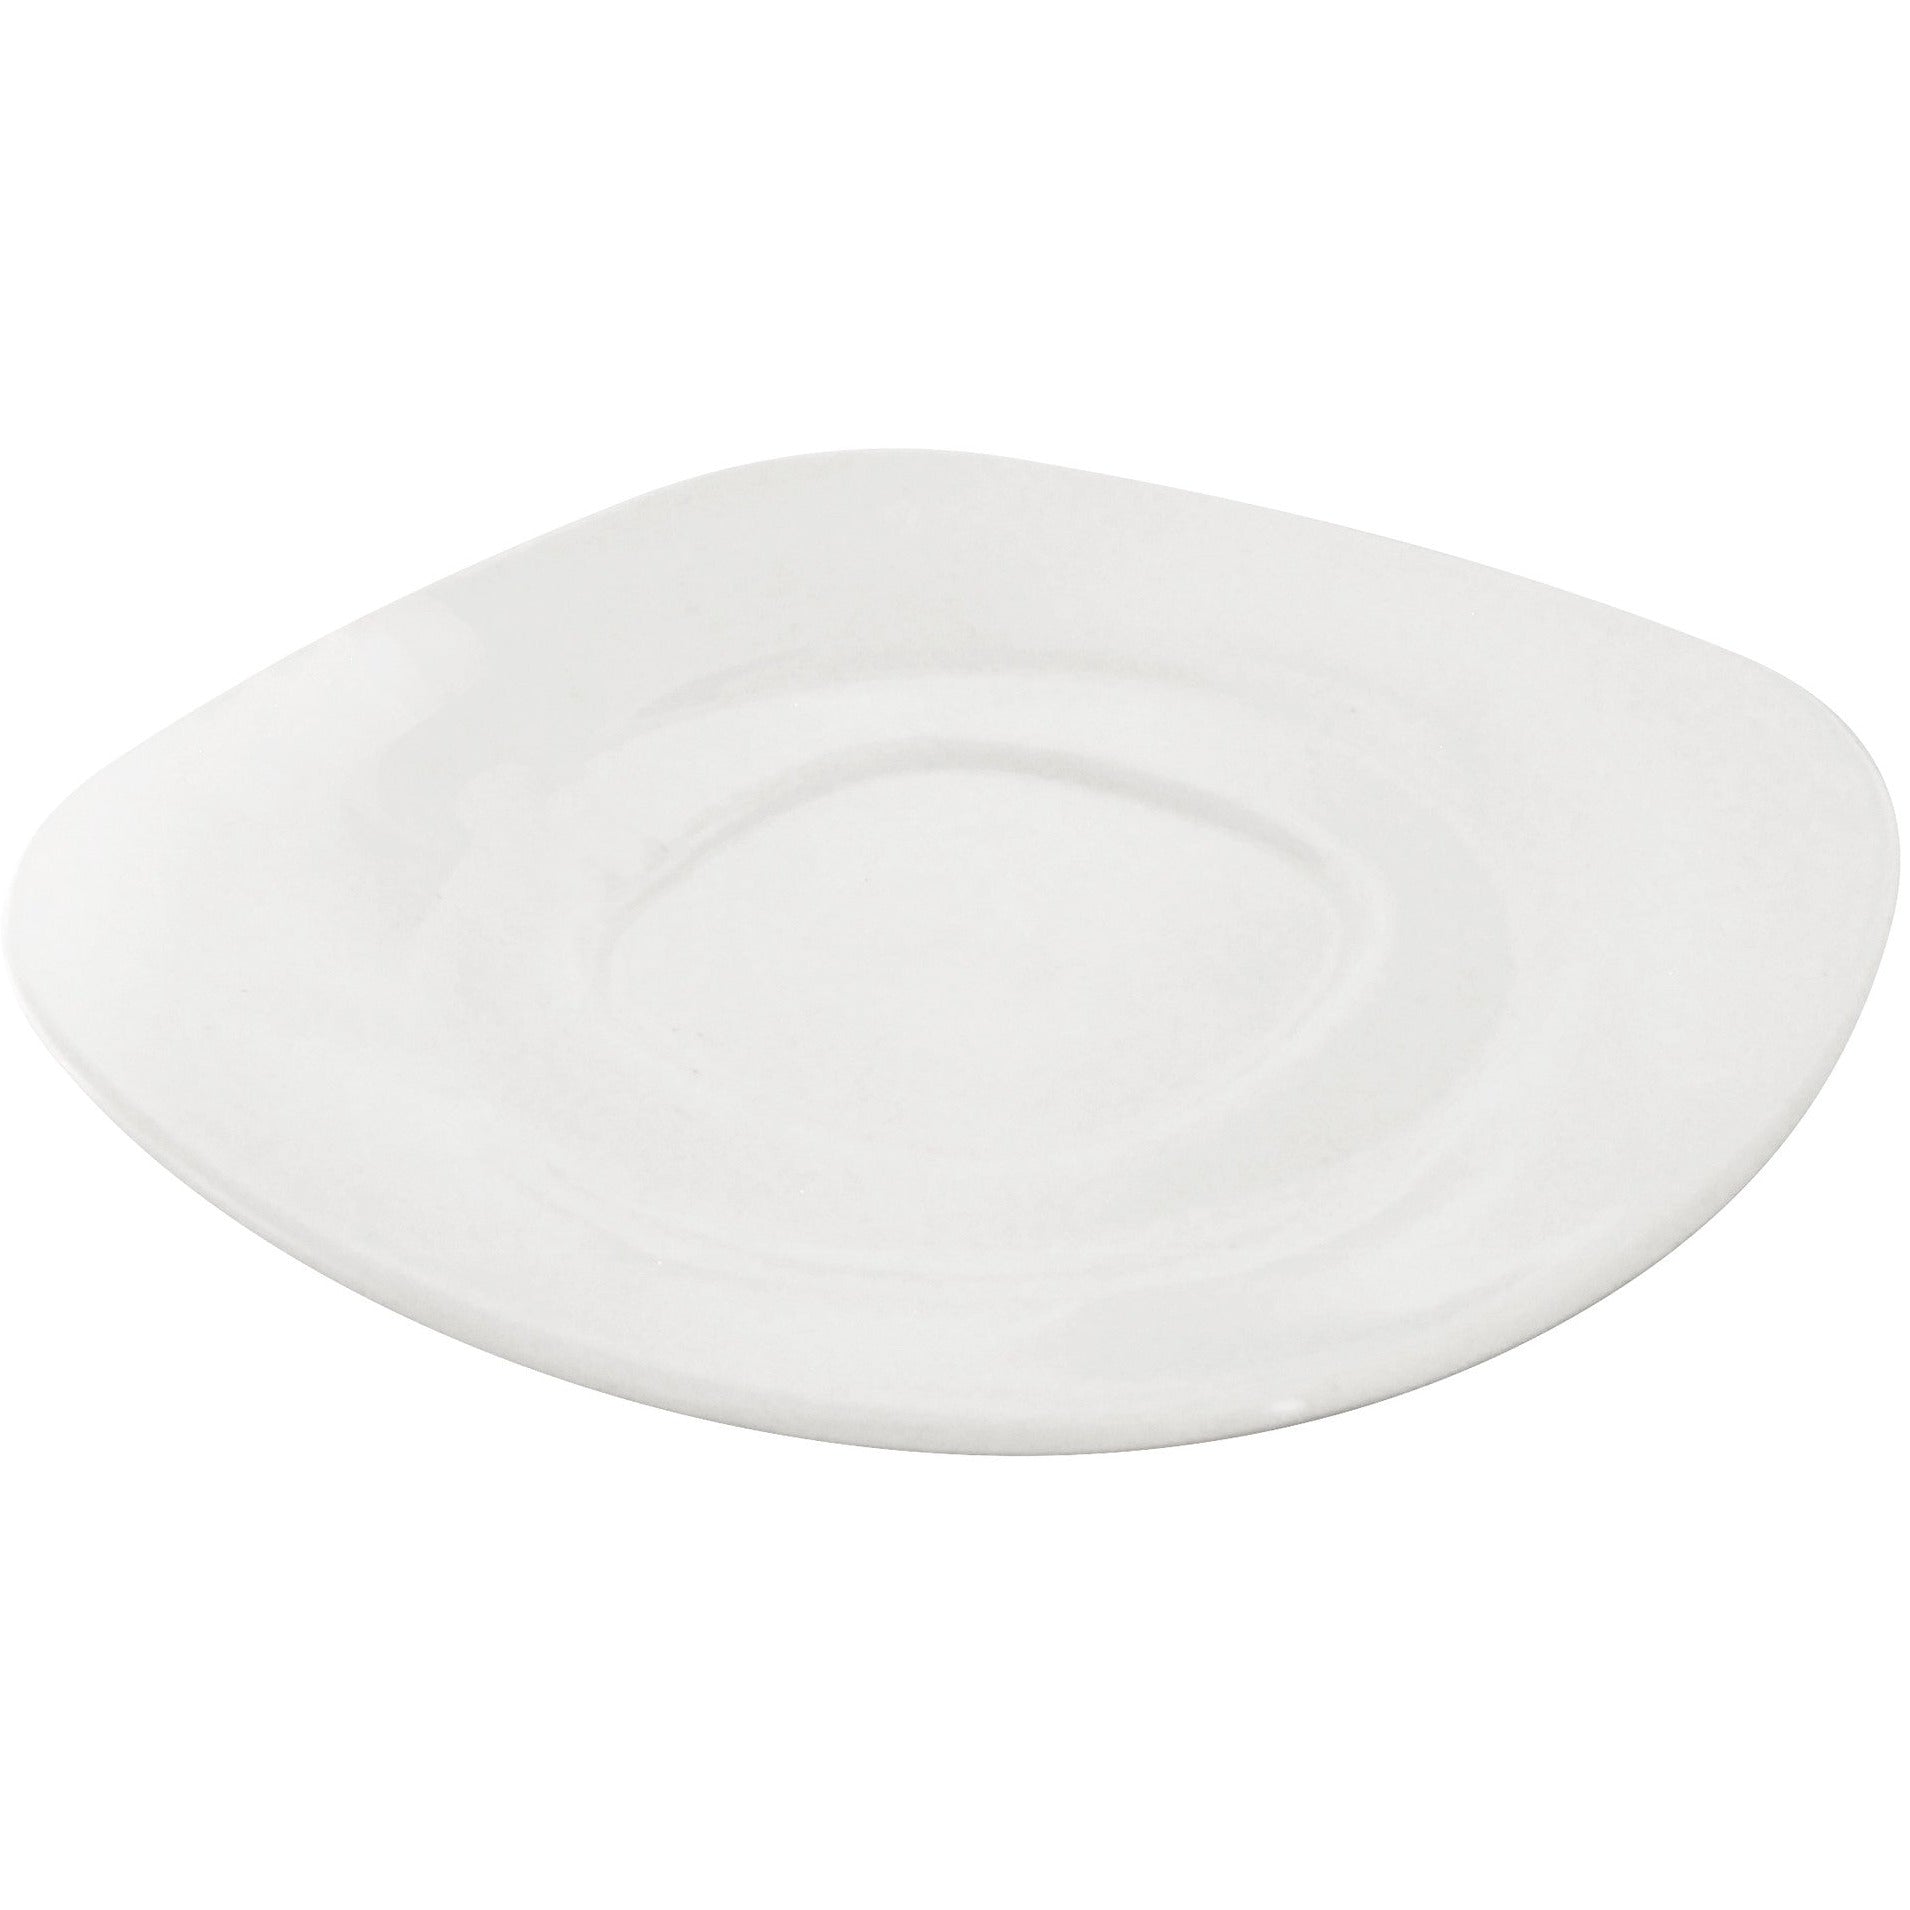 White fine porcelain saucer